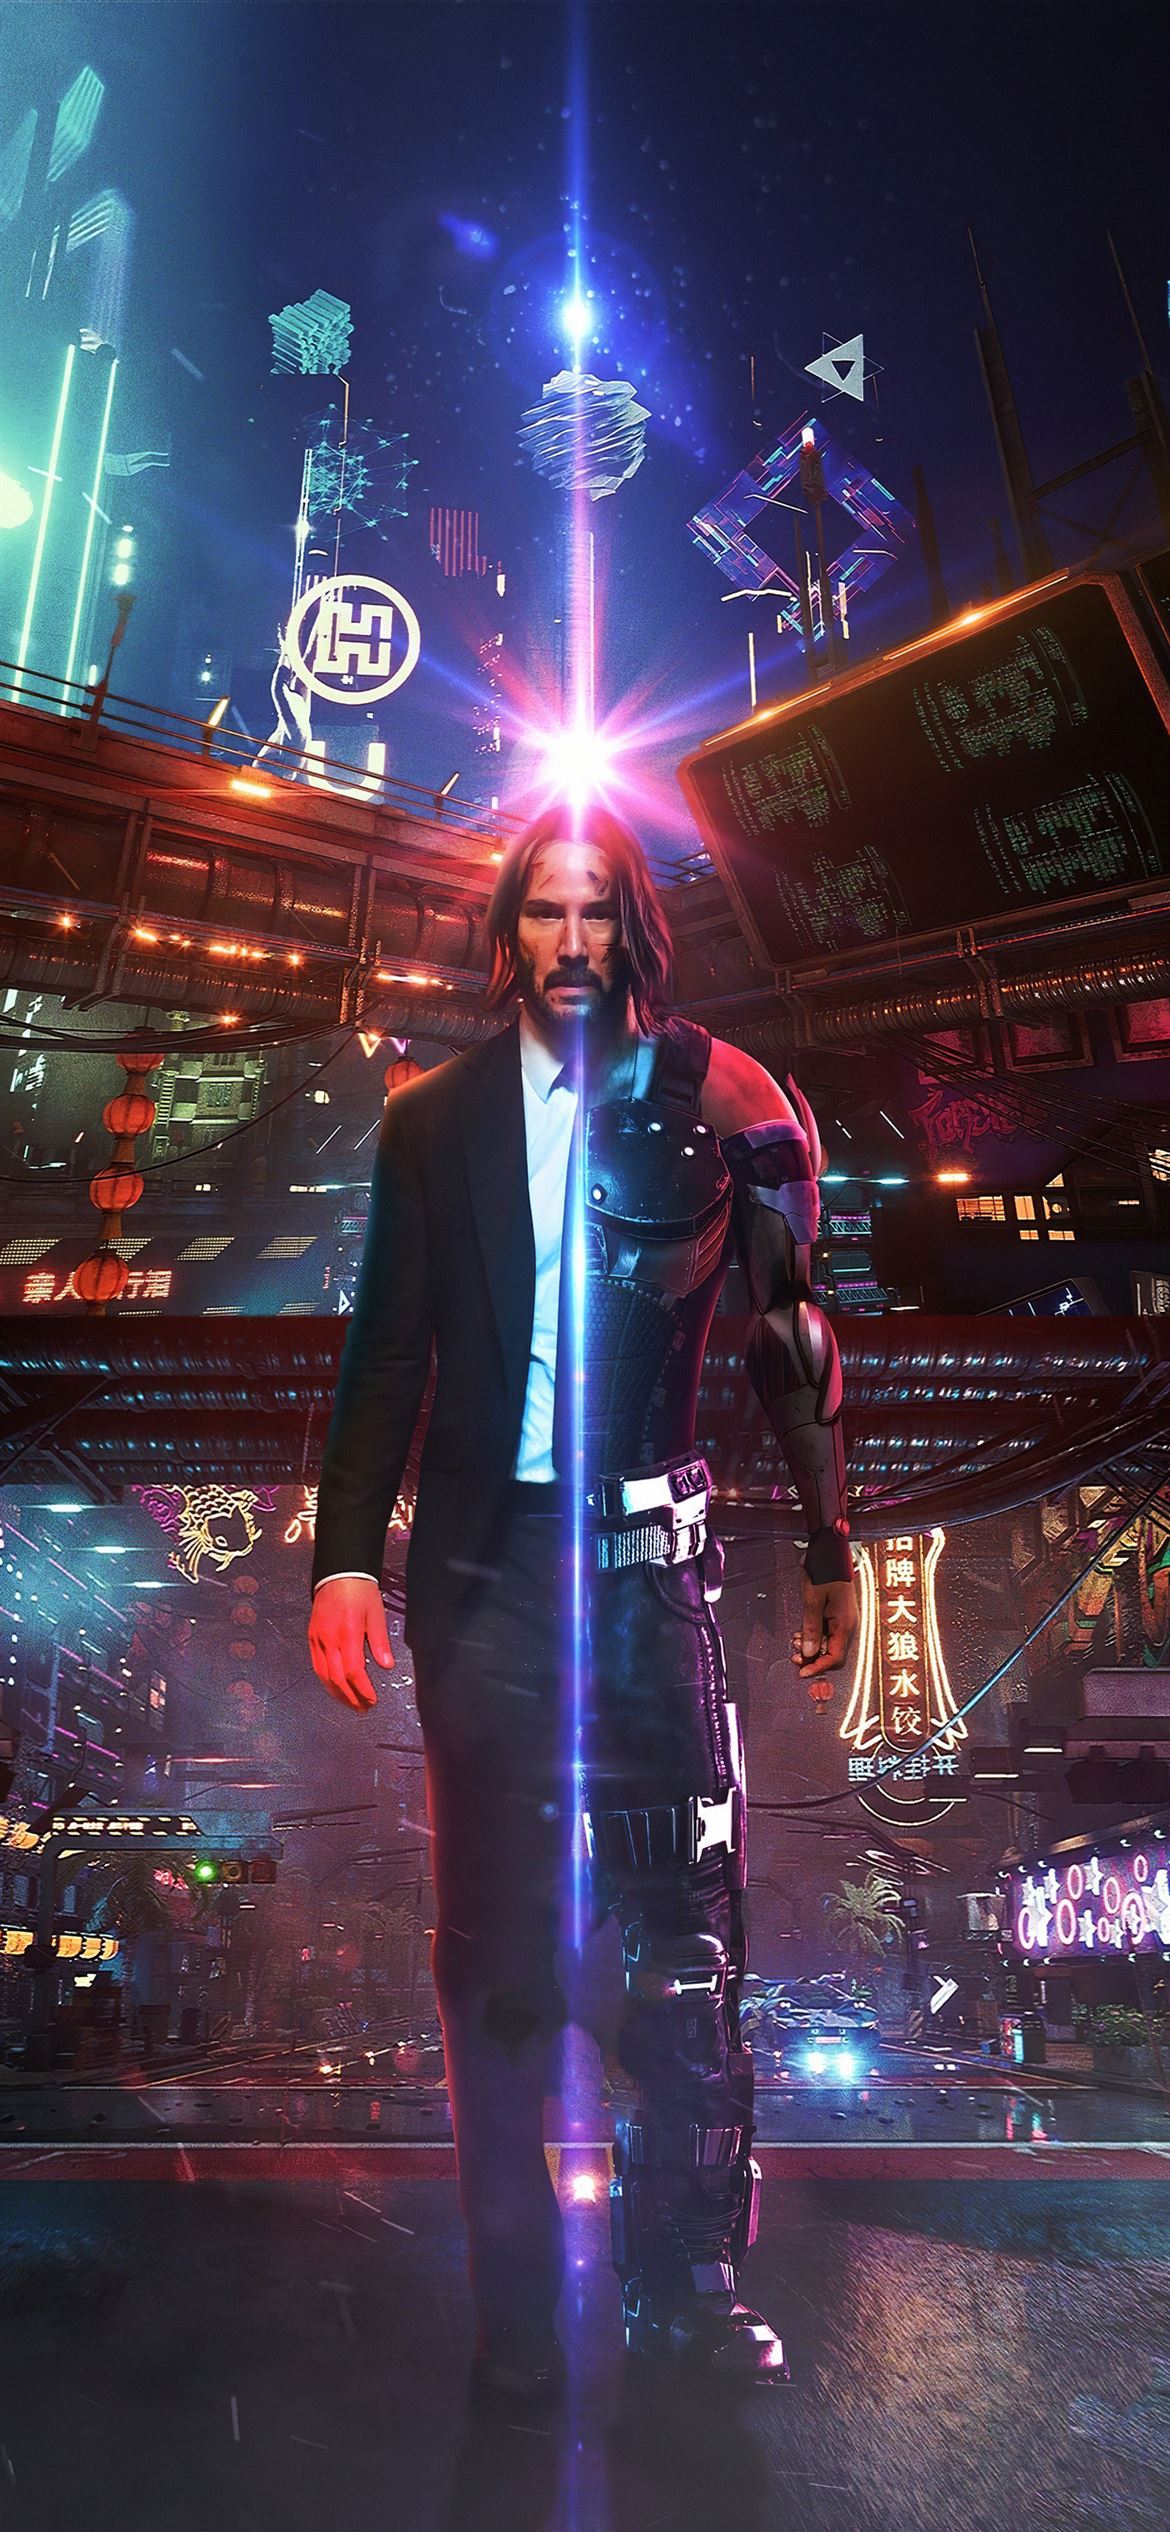 Best Cyberpunk 2077 iPhone 12 Wallpaper HD [2020]